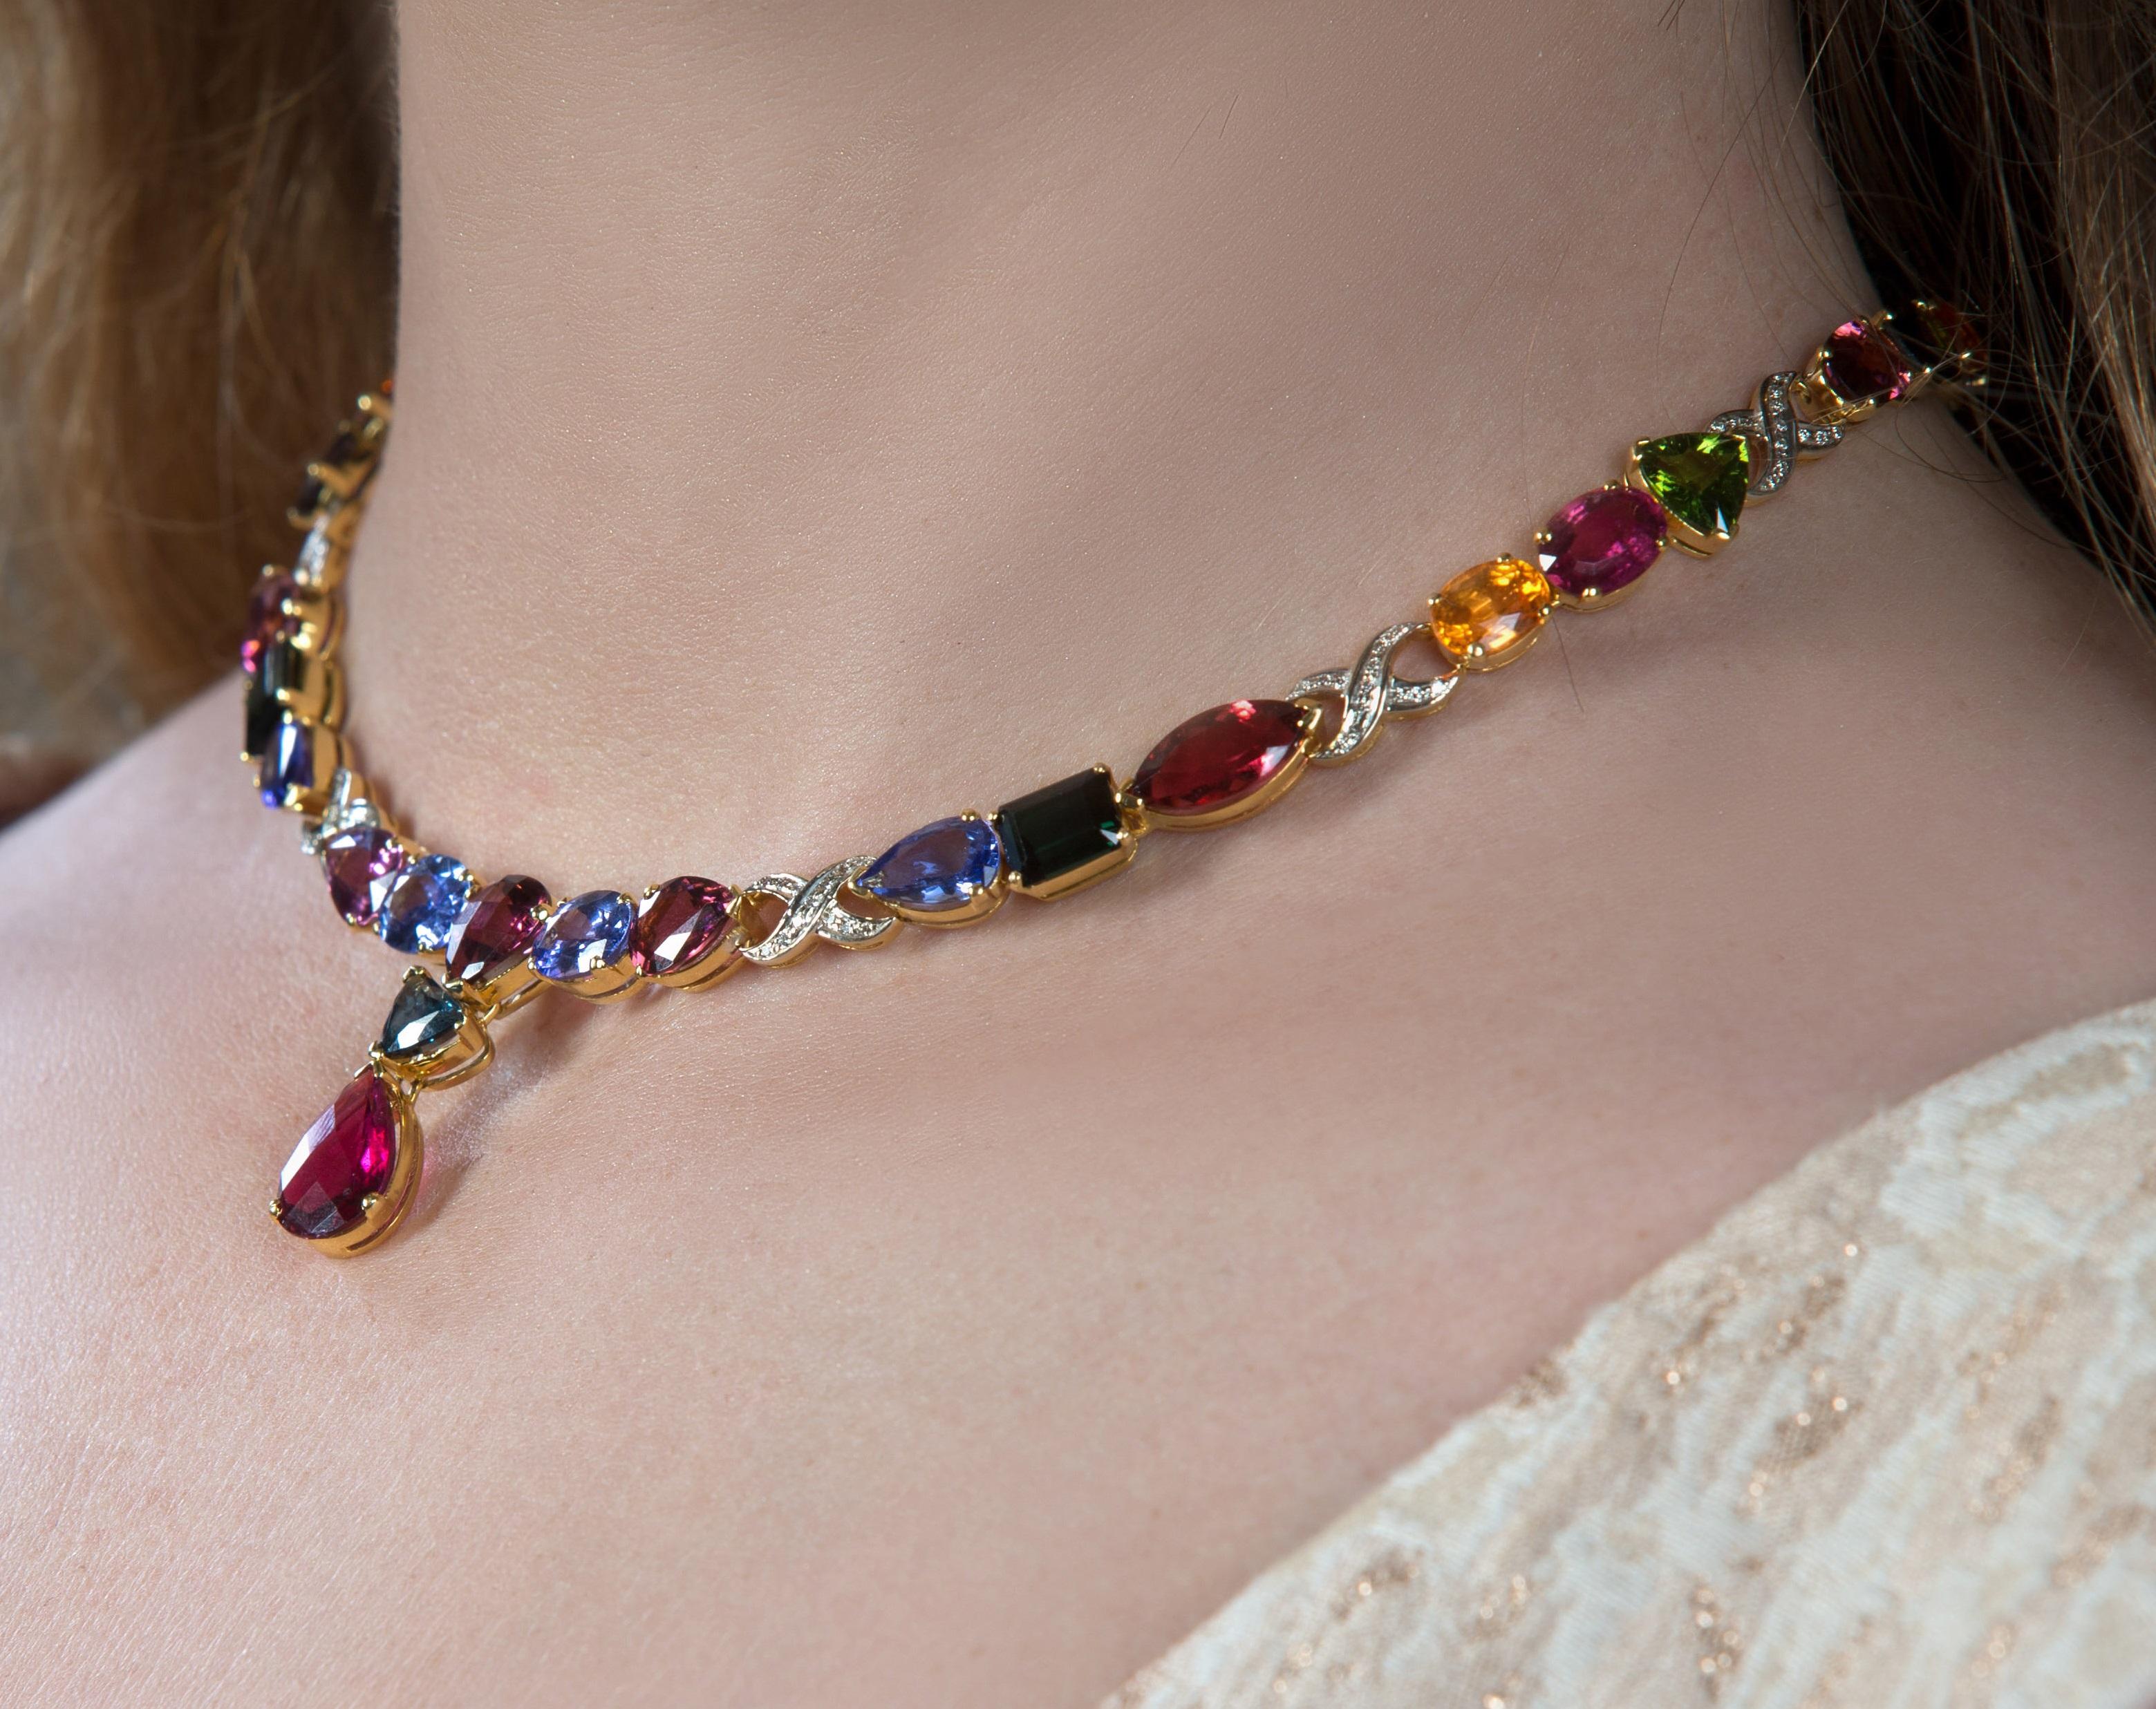 Tresor Diamond Necklace Set verfügt über 0,67 cts Diamant und 59,20 cts Edelstein in 18k Gelbgold. Das Halsketten-Set ist eine Ode an die luxuriöse und doch klassische Schönheit mit funkelnden Diamanten. Ihr zeitgemäßes und modernes Design macht sie